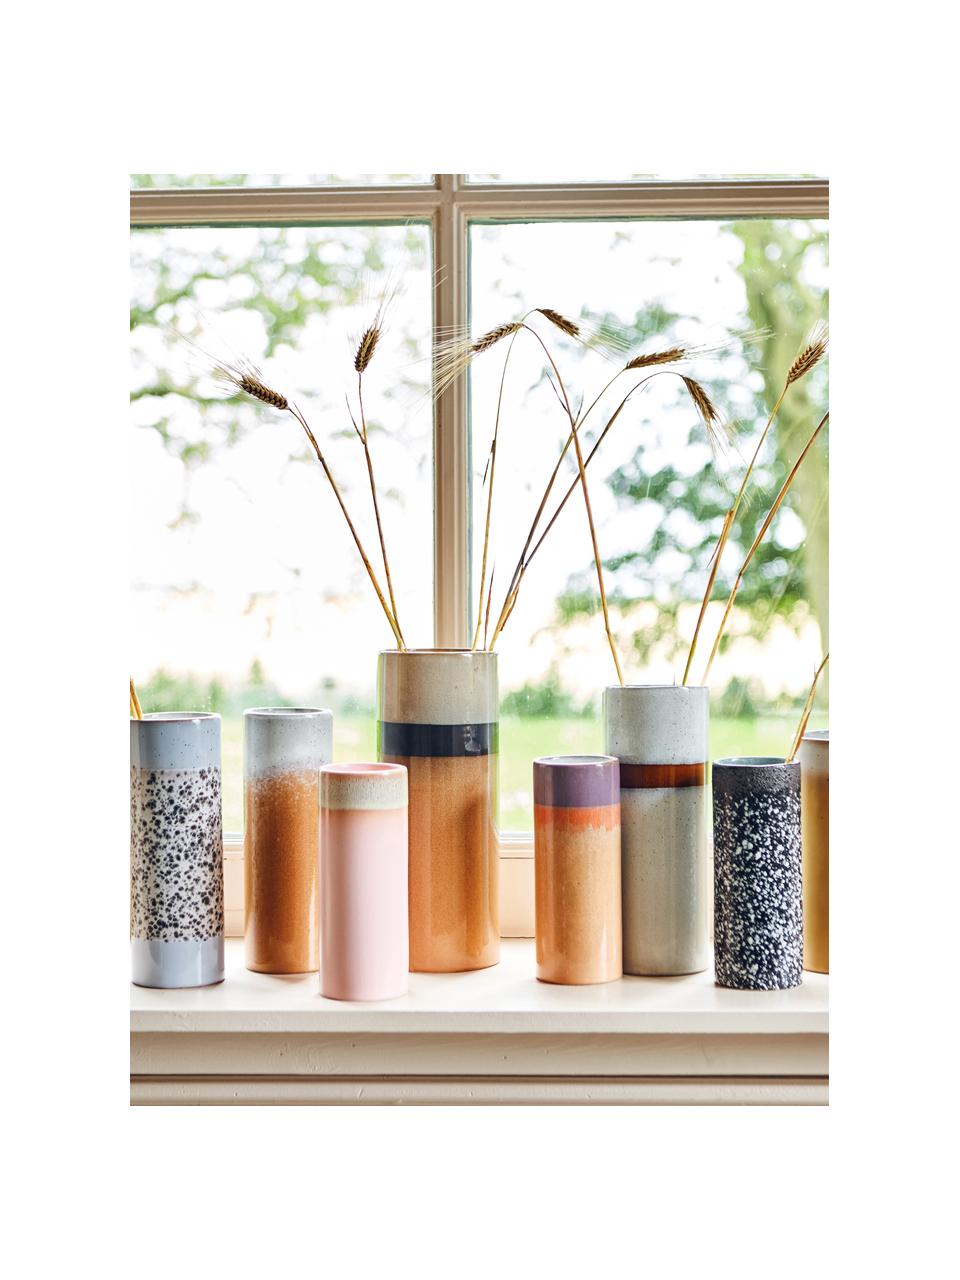 Handbemalte Keramik-Vase 70's mit reaktiver Glasur, H 19 cm, Keramik, Schwarz, Weiß, Ø 8 x H 19 cm